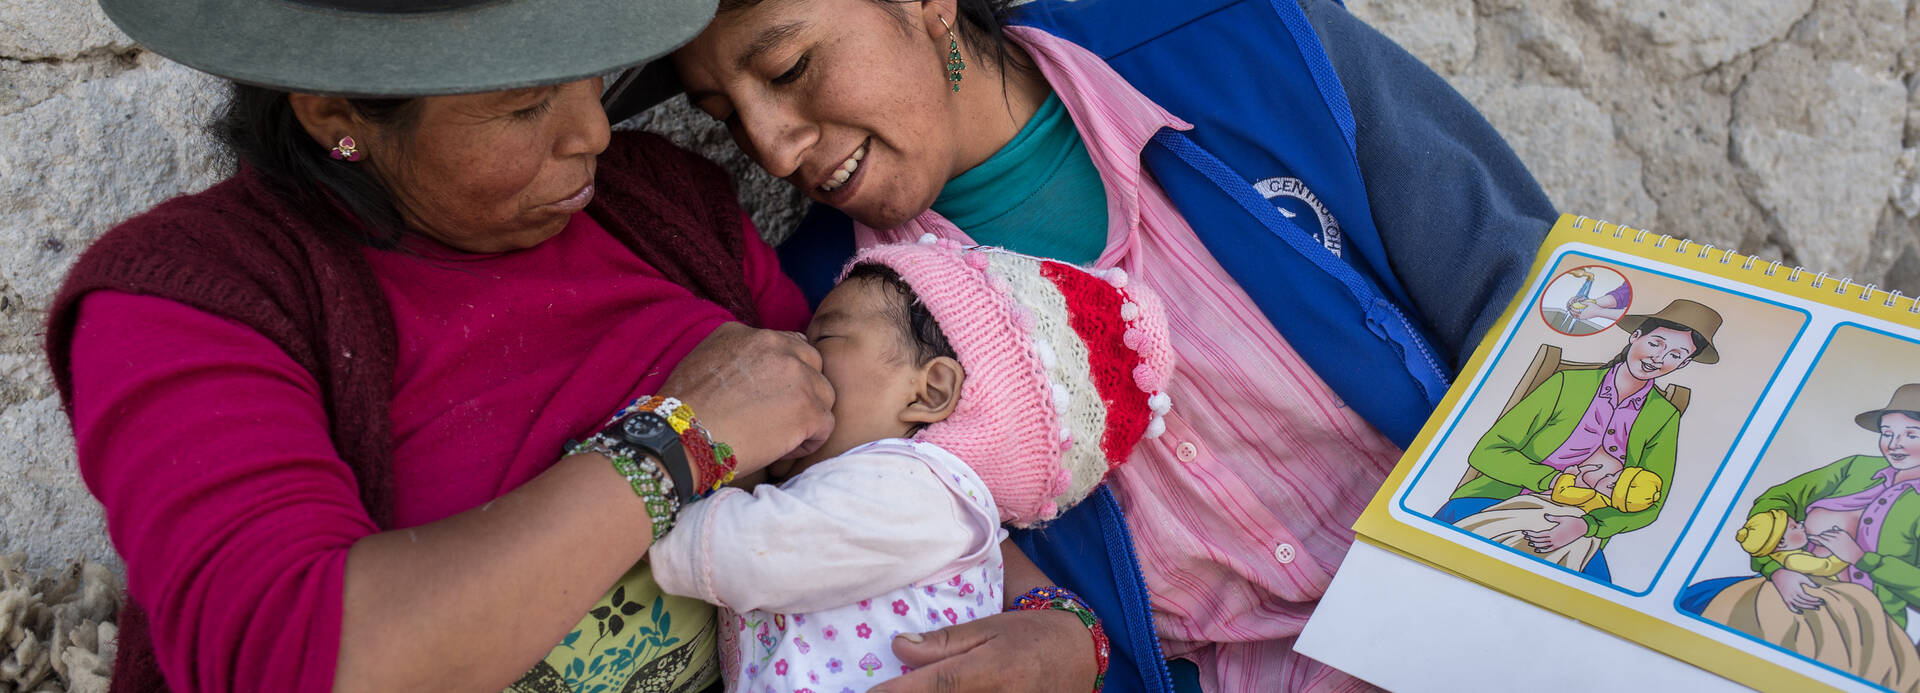 Zwei Frauen aus Peru stillen ein kleines Mädchen nach einer bildlichen Anleitung.